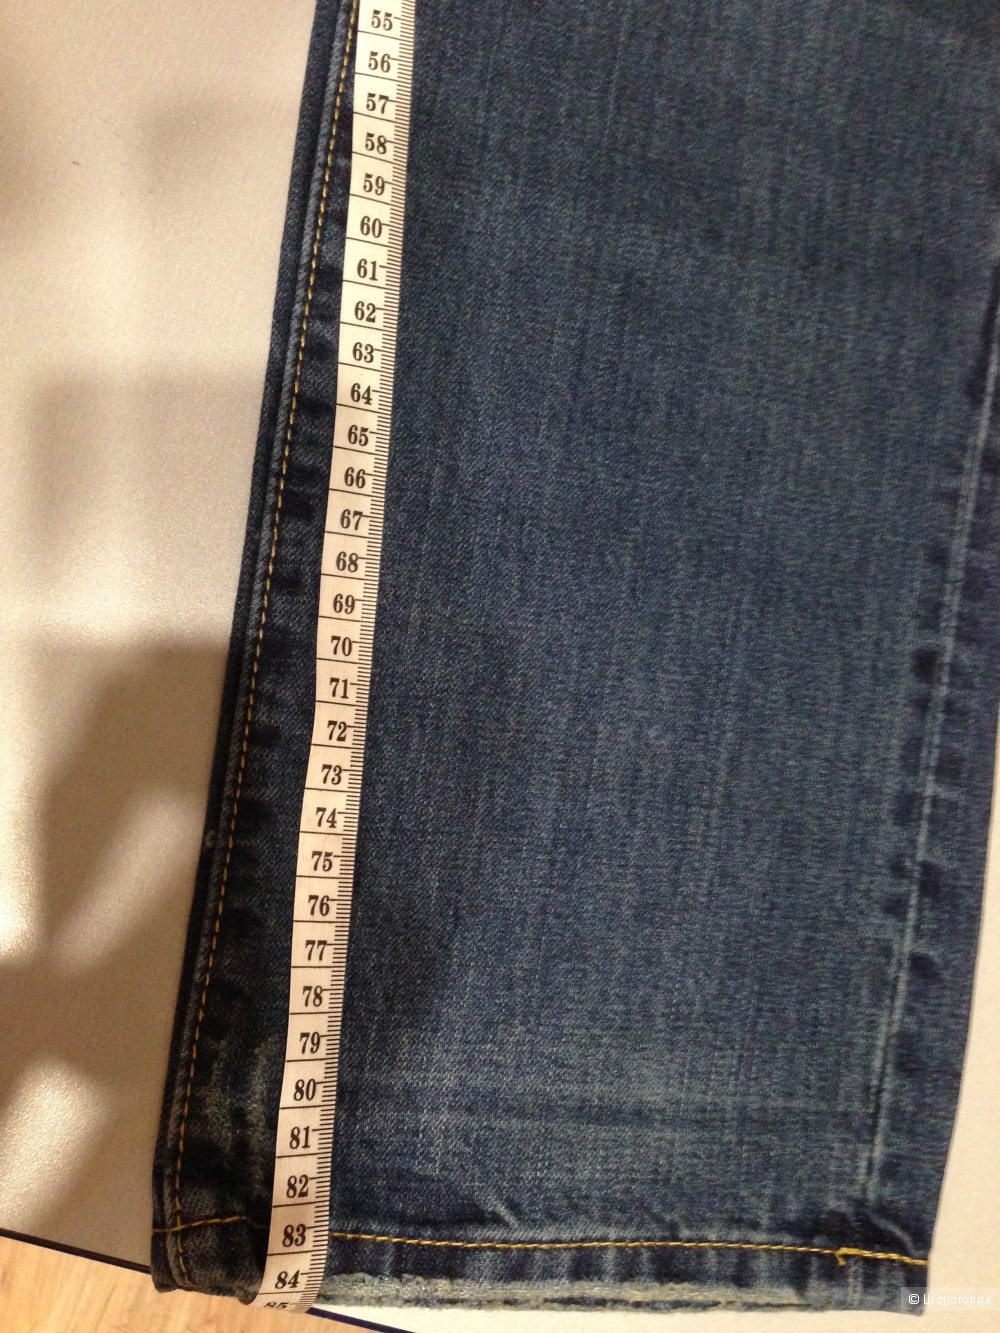 Мужские джинсы Dsquared2, реплика.Размер 36/32, на рос. 33-34